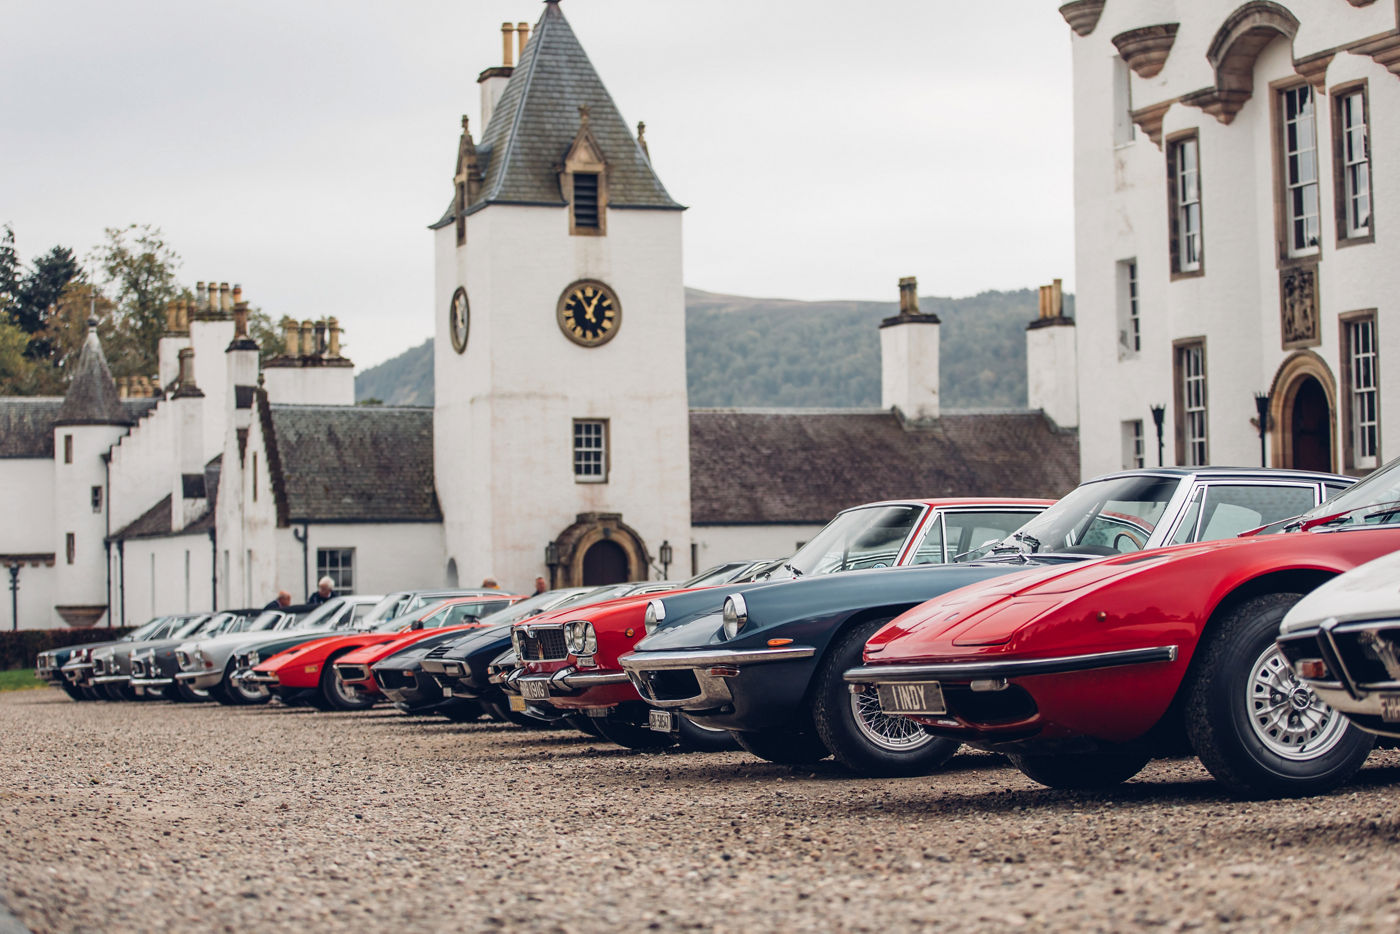 Modelos Maserati clásicos al lado del castillo Blair